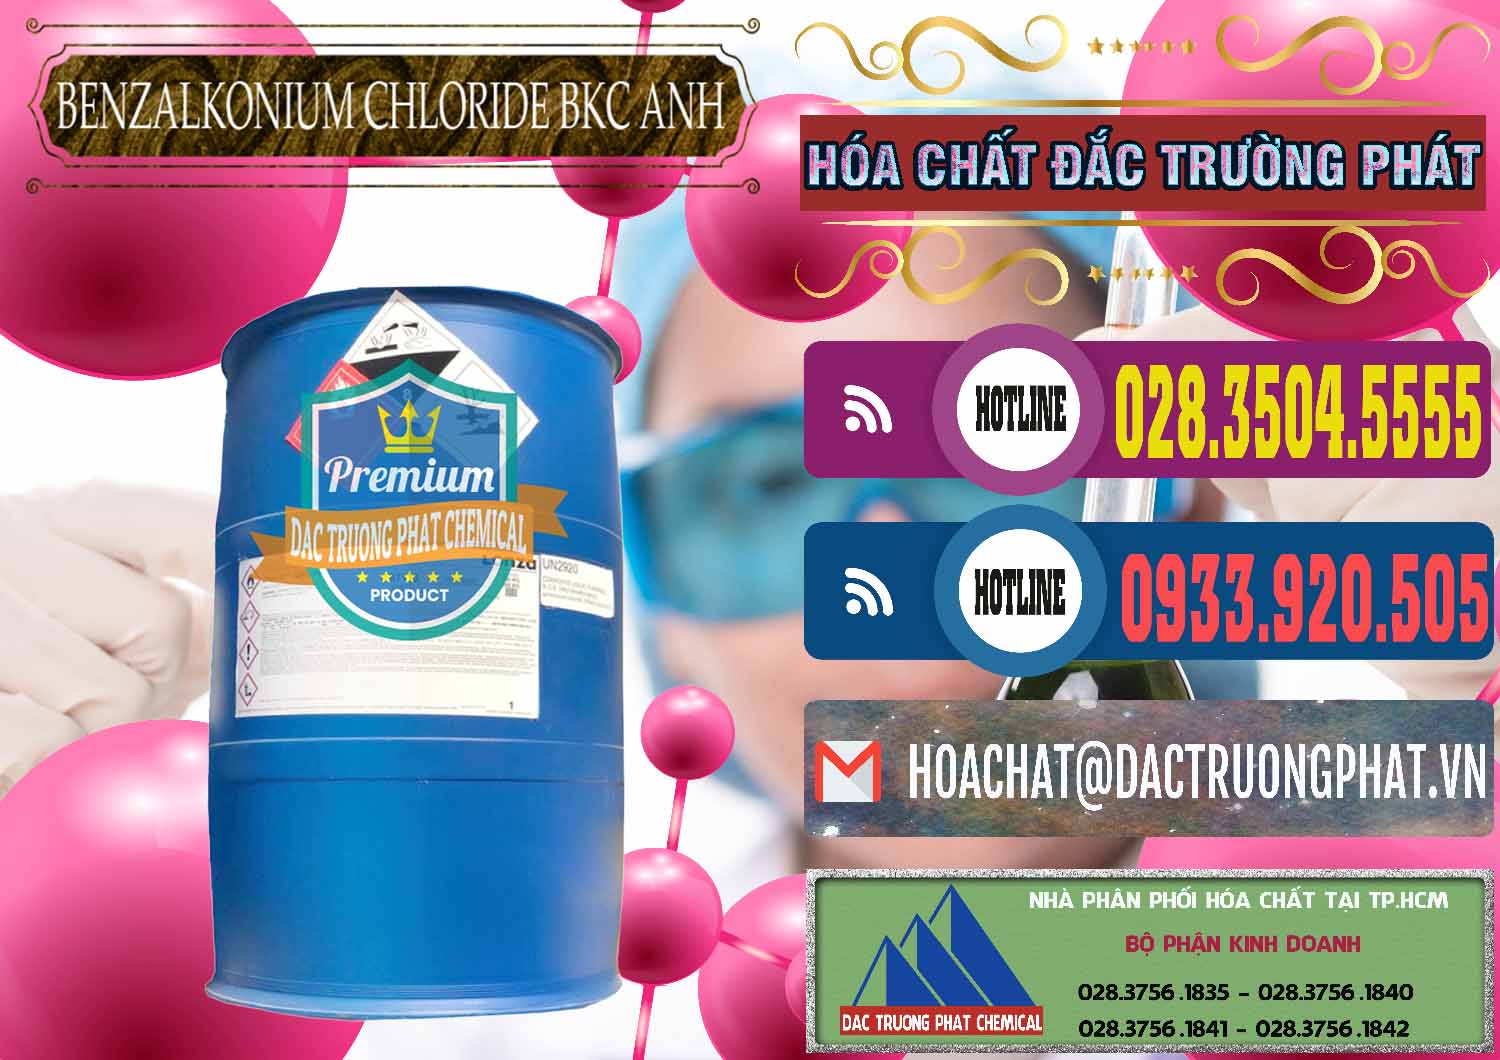 Đơn vị chuyên phân phối ( bán ) BKC - Benzalkonium Chloride 80% Anh Quốc Uk Kingdoms - 0457 - Công ty chuyên cung cấp ( kinh doanh ) hóa chất tại TP.HCM - muabanhoachat.com.vn